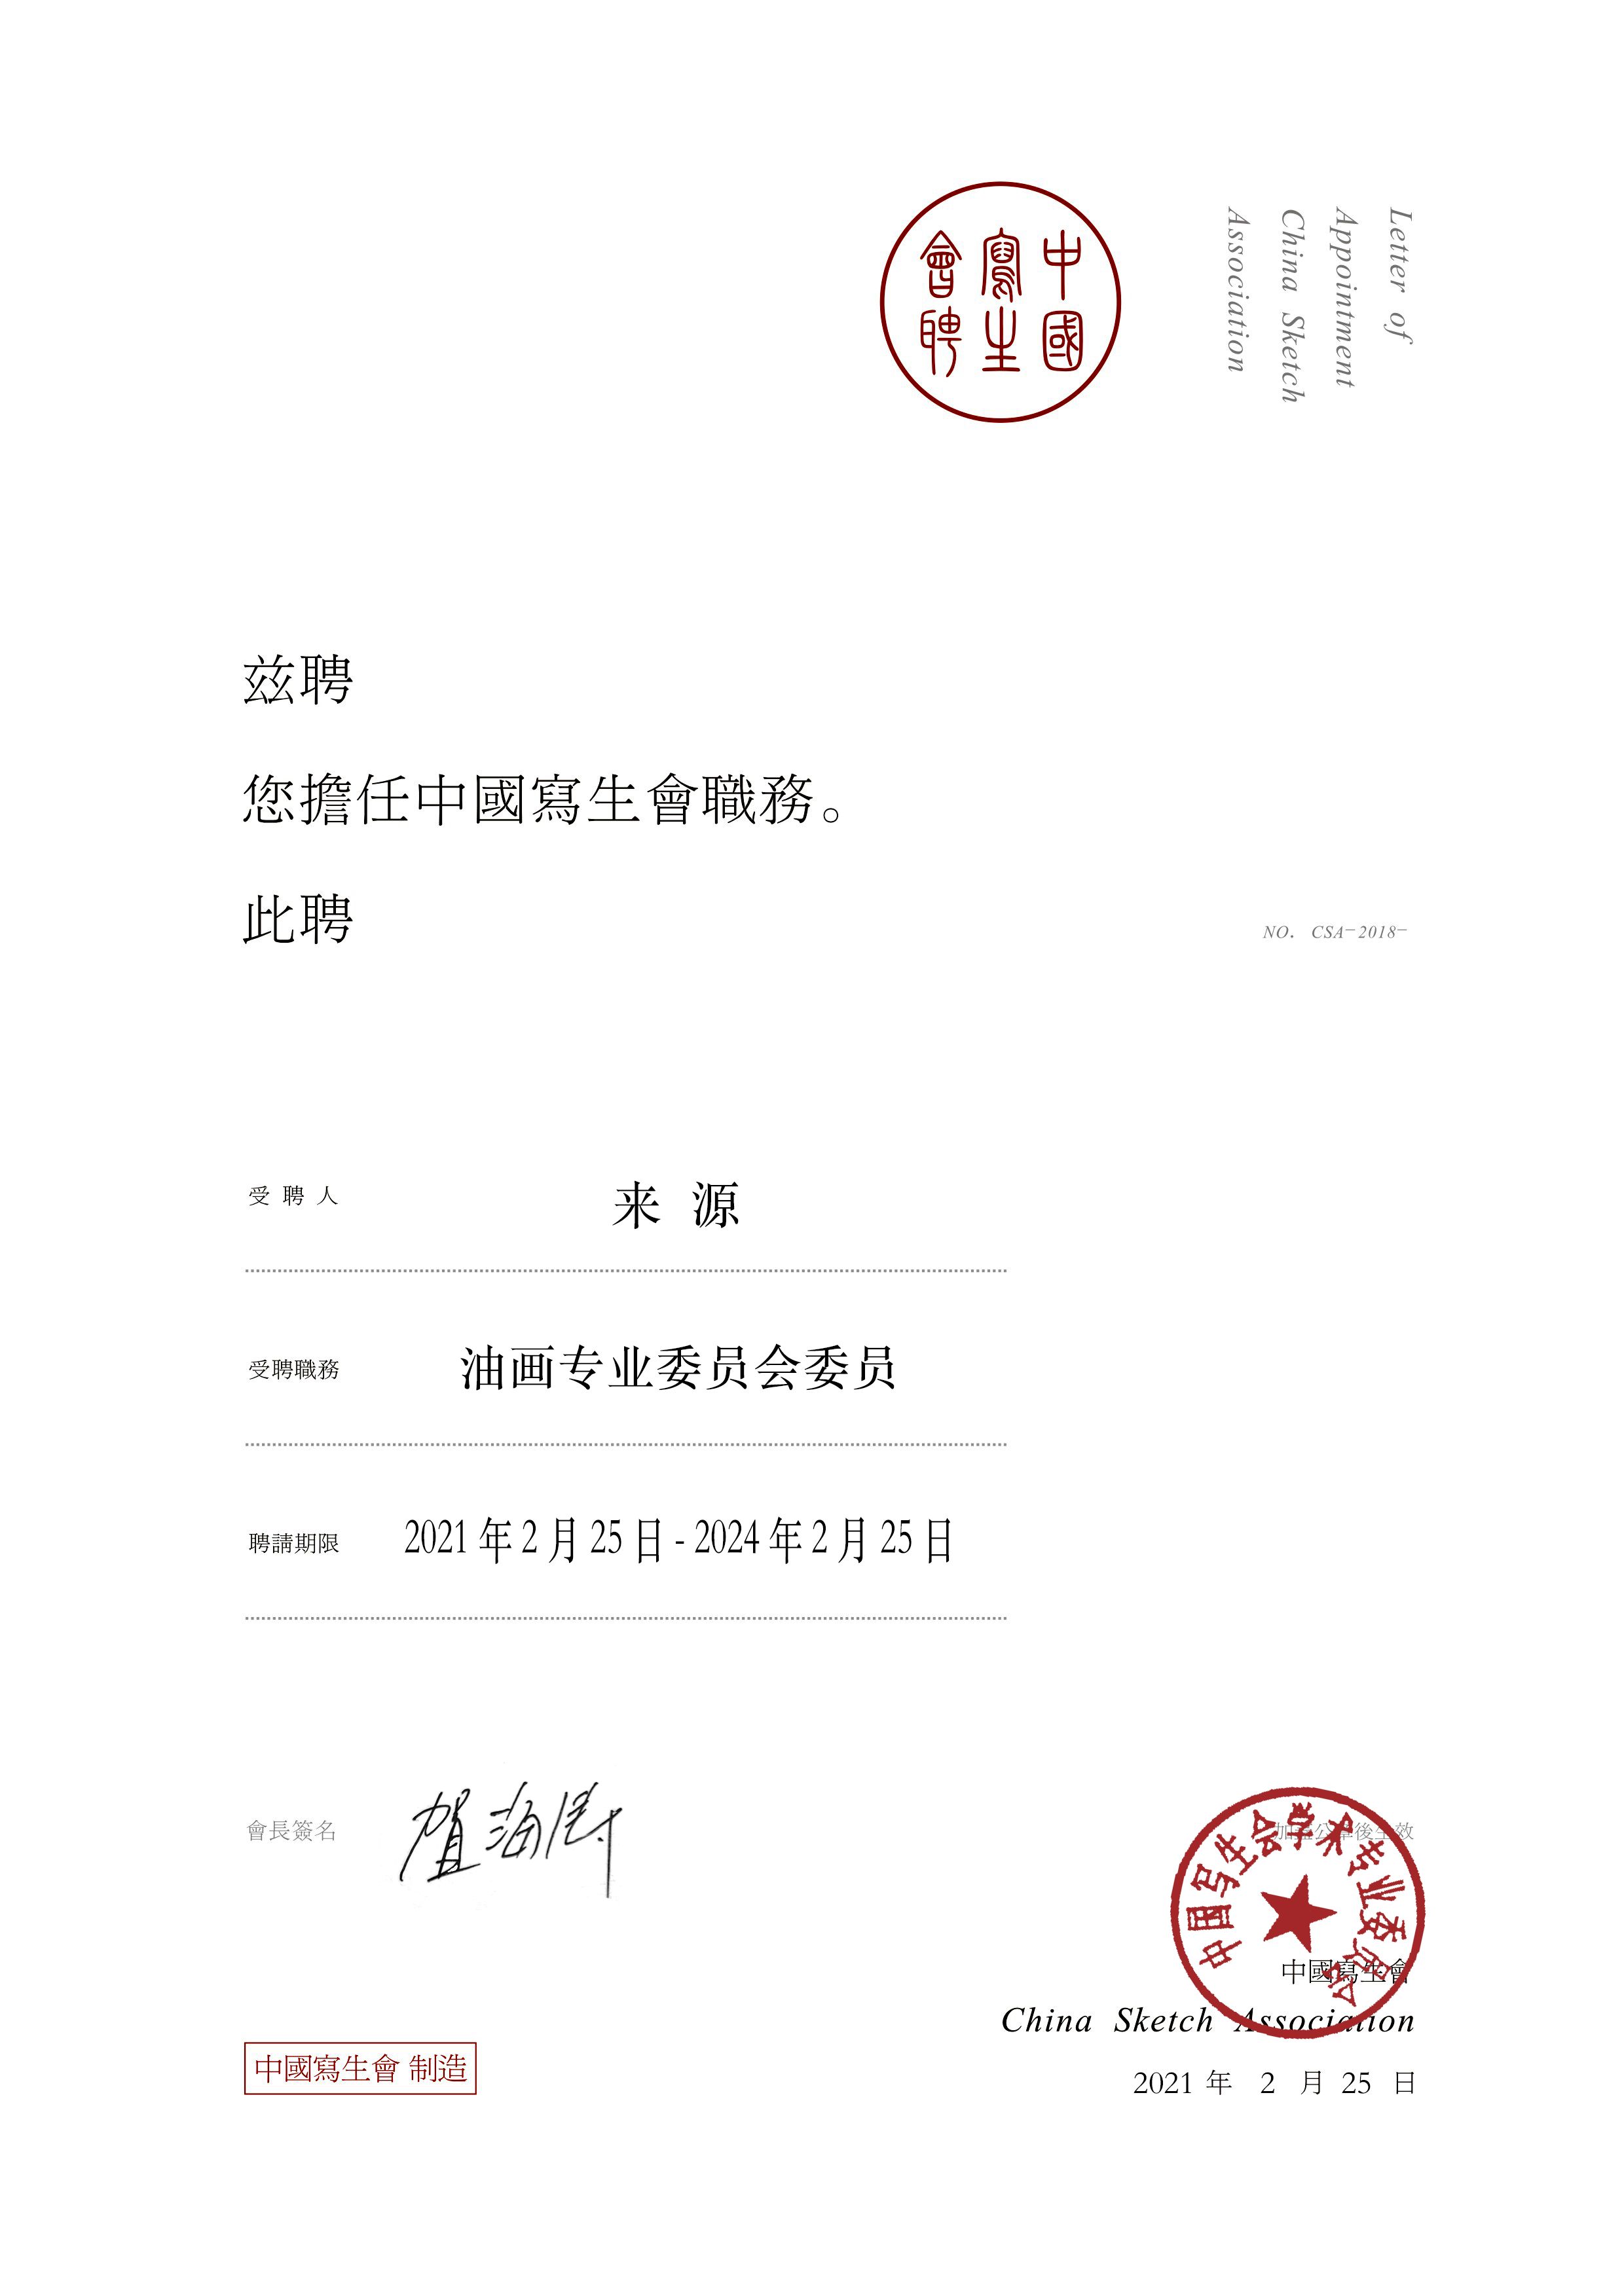 陳燕菲女士、來源先生、于明先生、莊重先生接受中國寫生會油畫專業主任委員會聘書